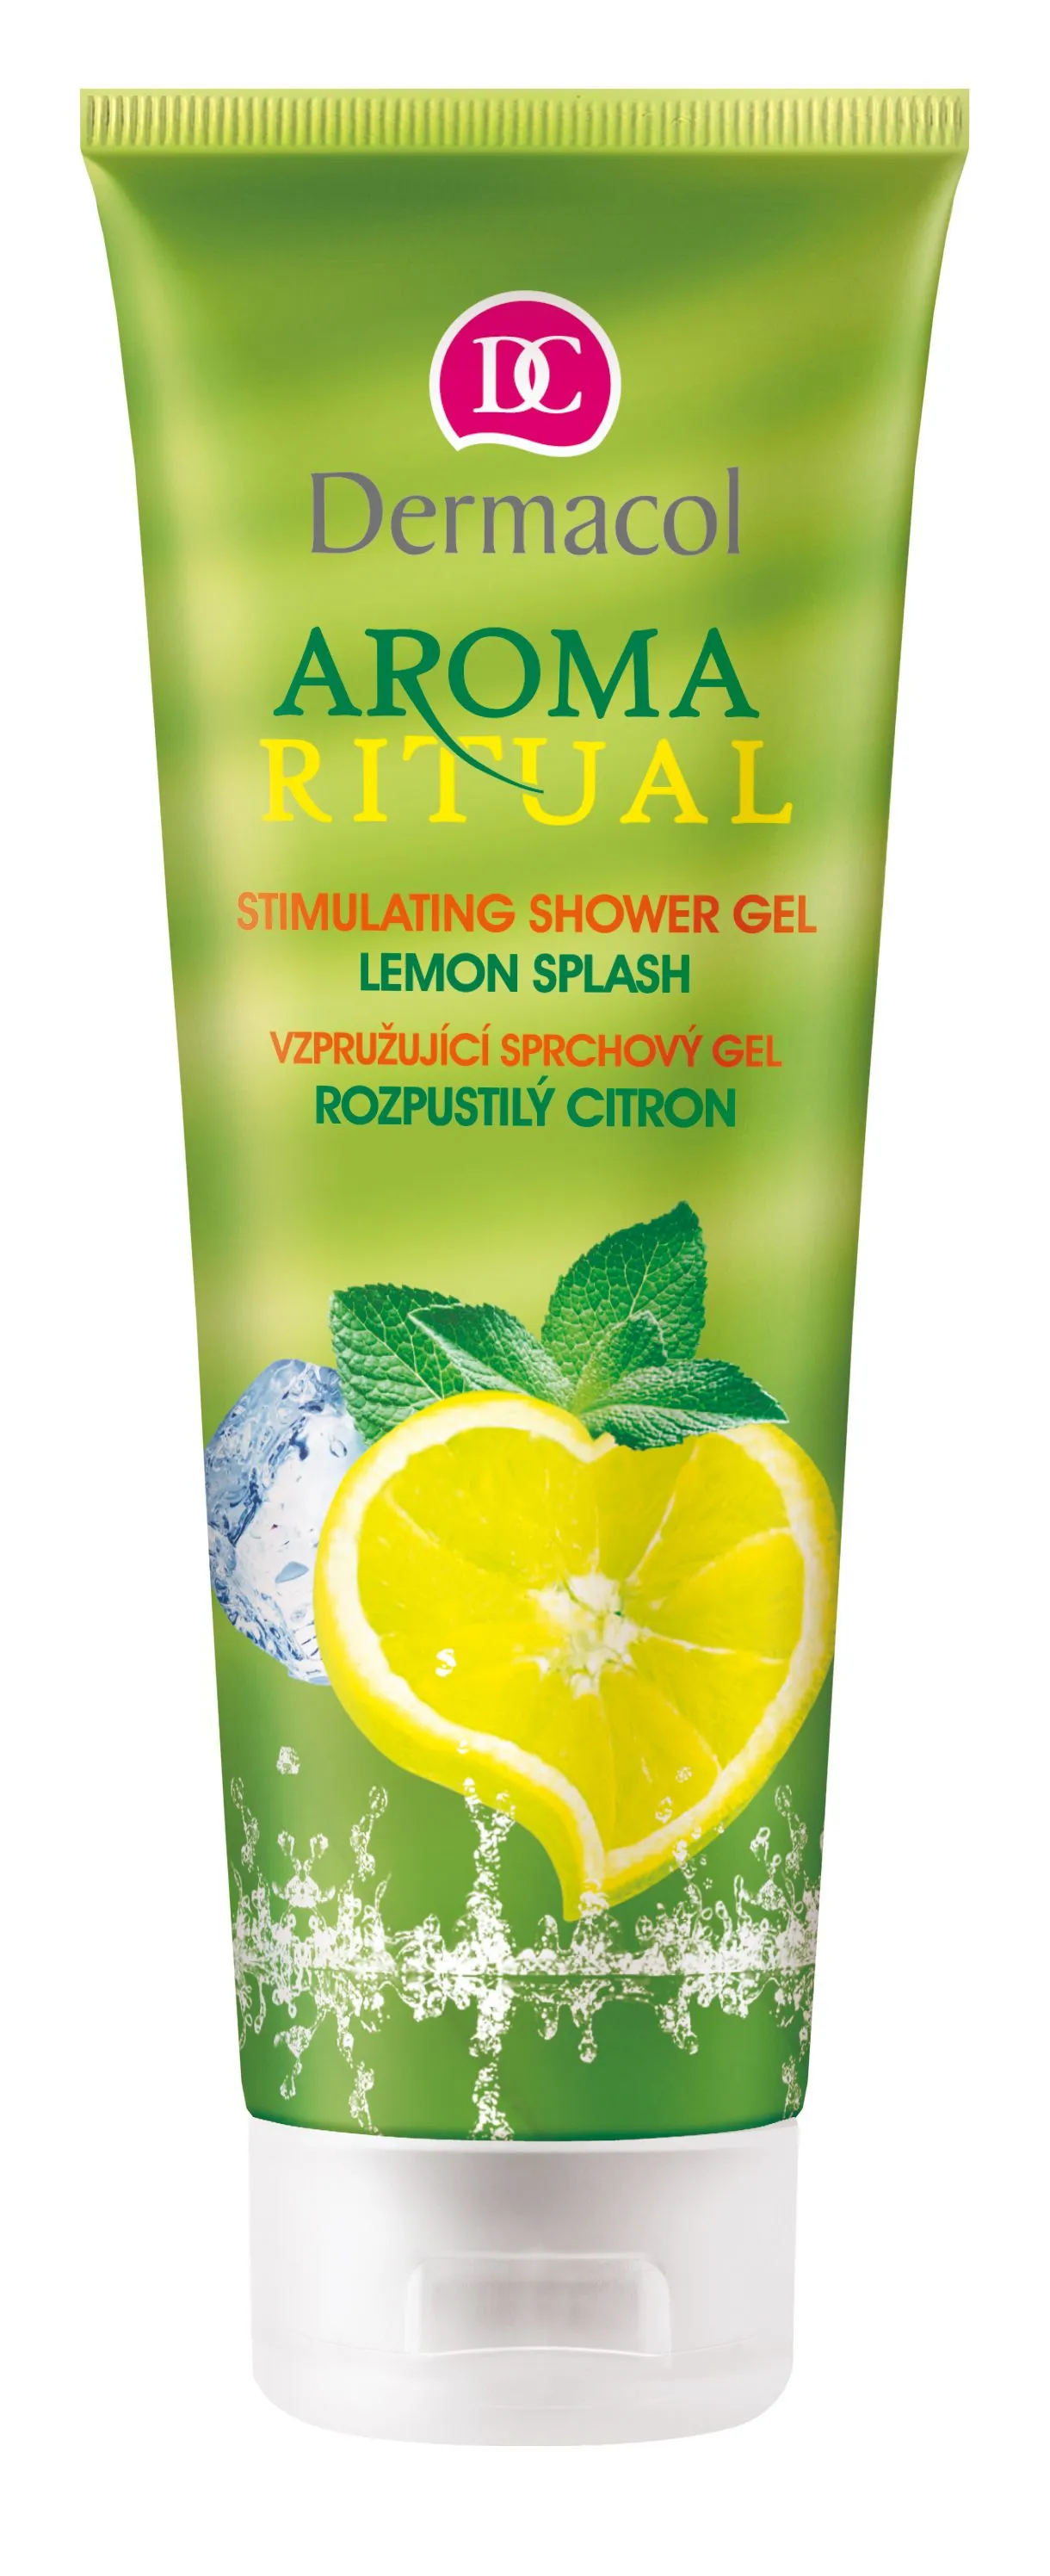 Dermacol Aroma Ritual Vzpružující sprchový gel rozpustilý citron 250 ml